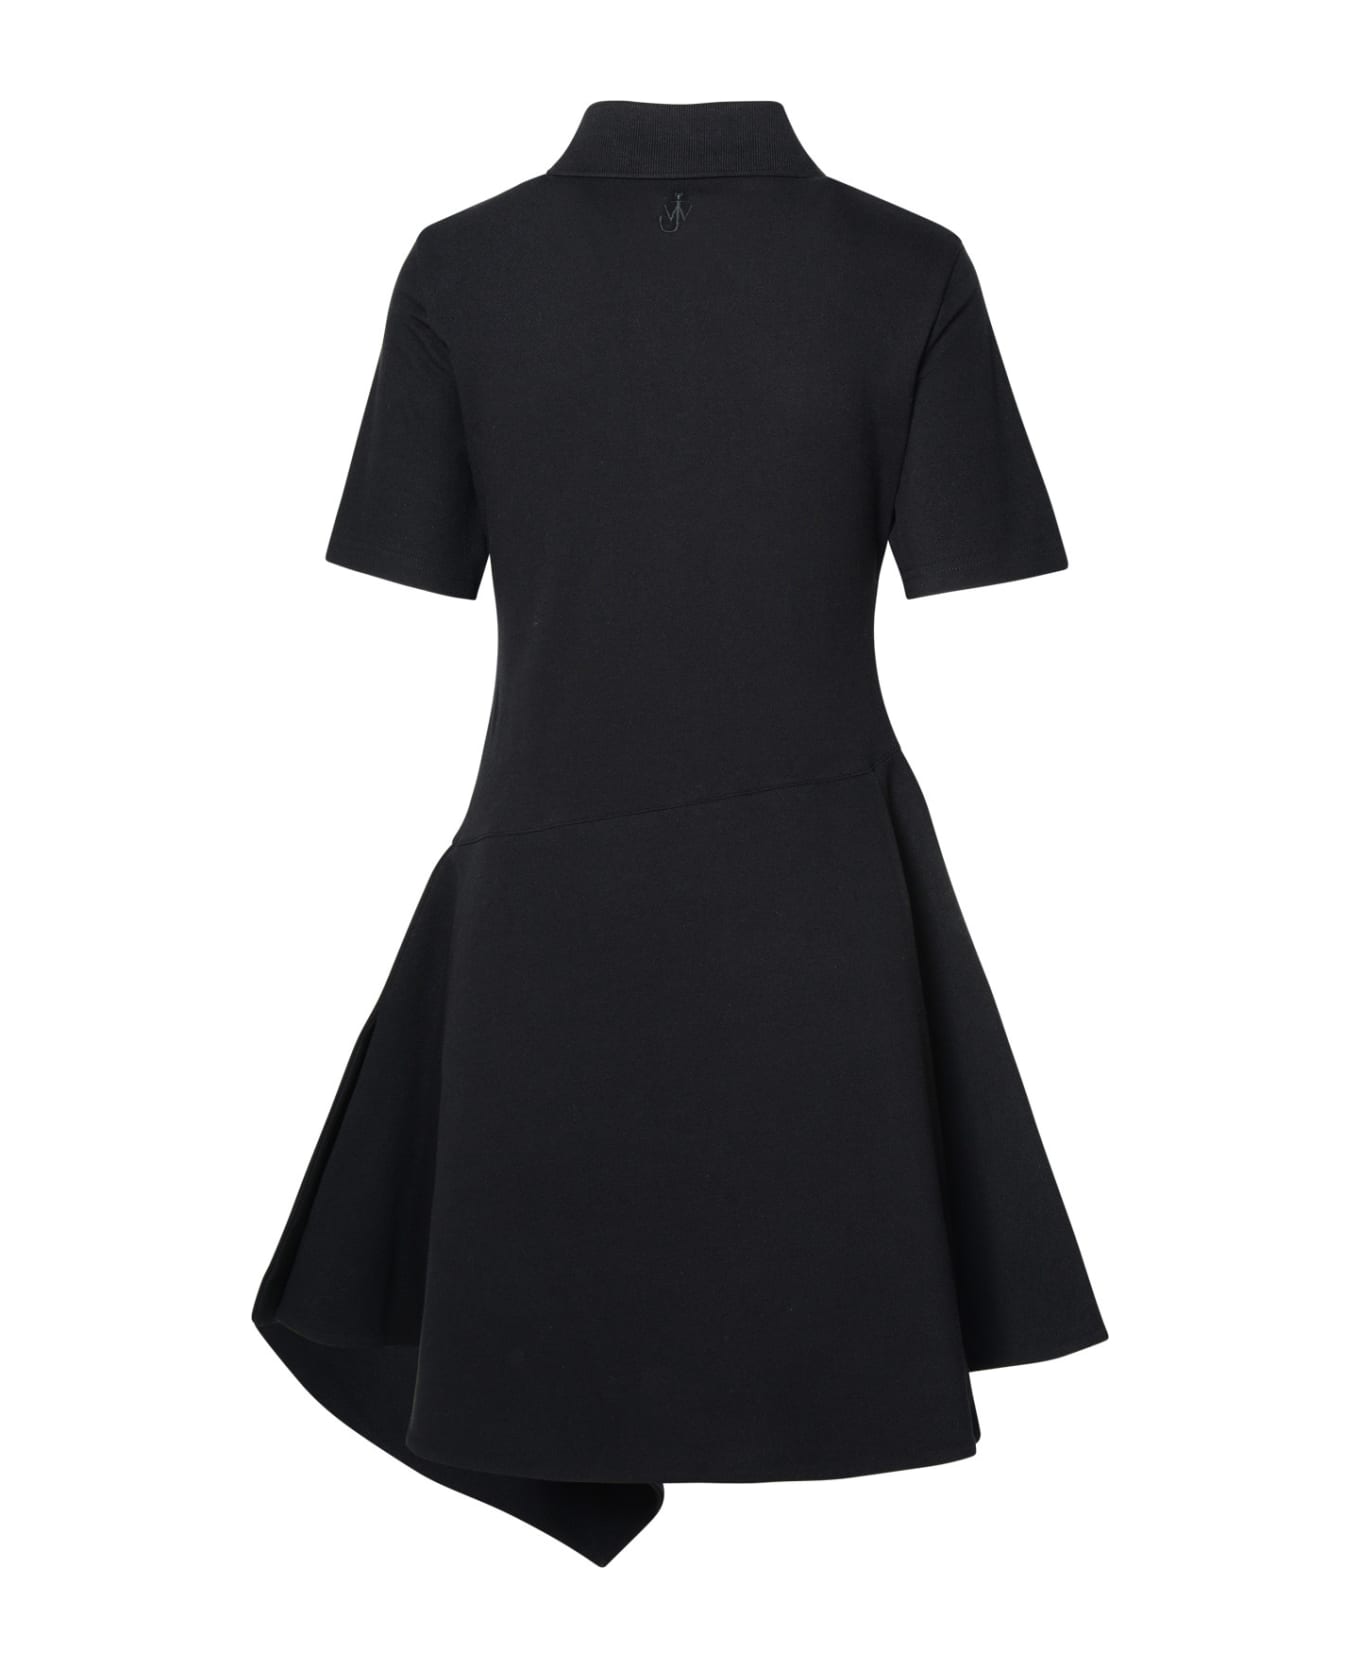 J.W. Anderson Black Cotton Dress - Black